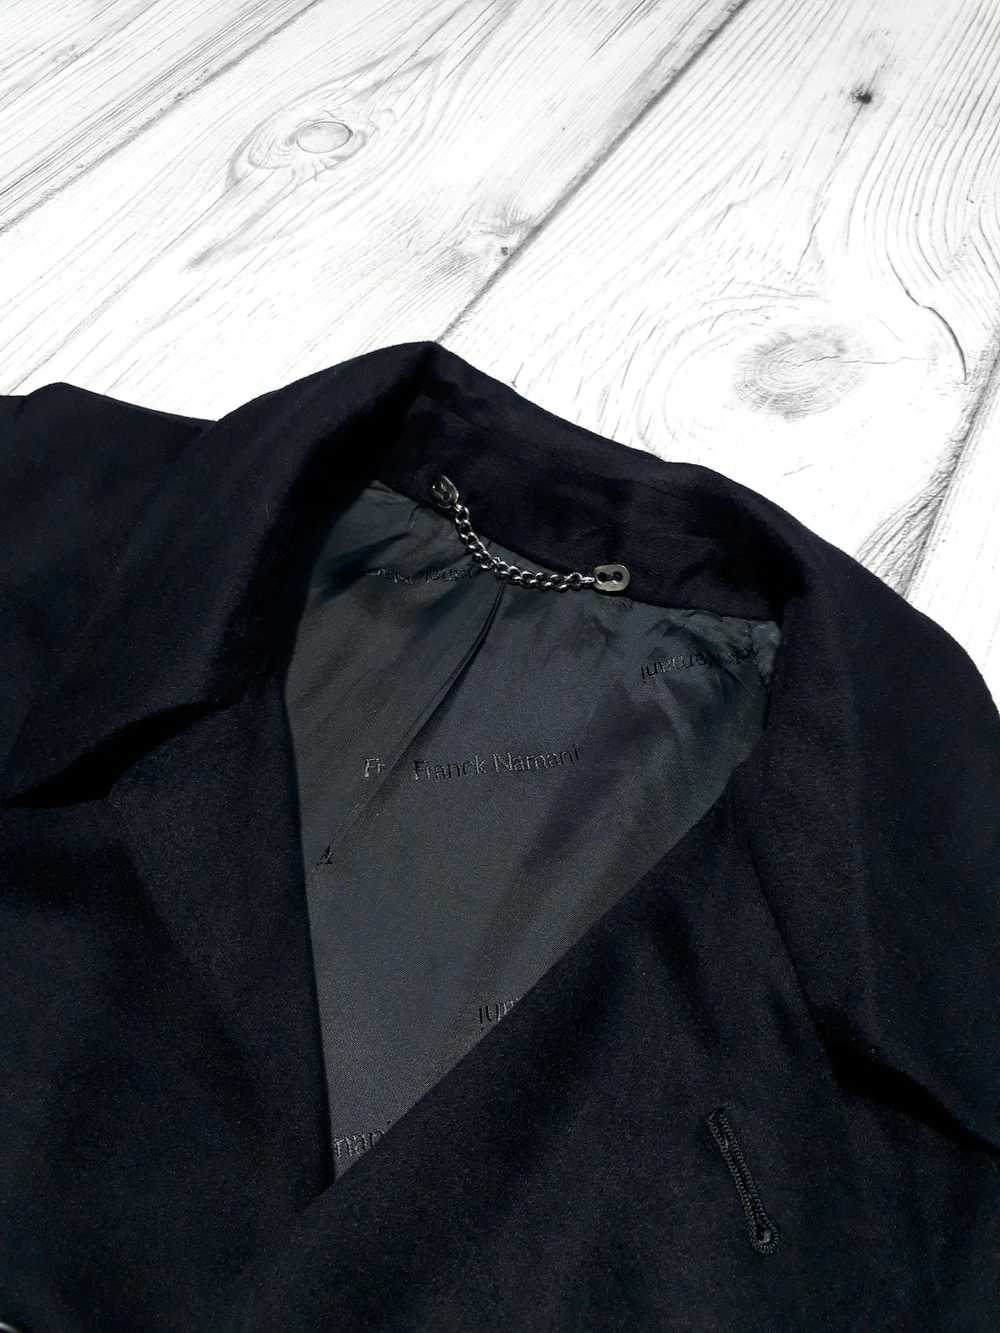 Franck Namani Franck Namani cashmere coat size L-… - image 5